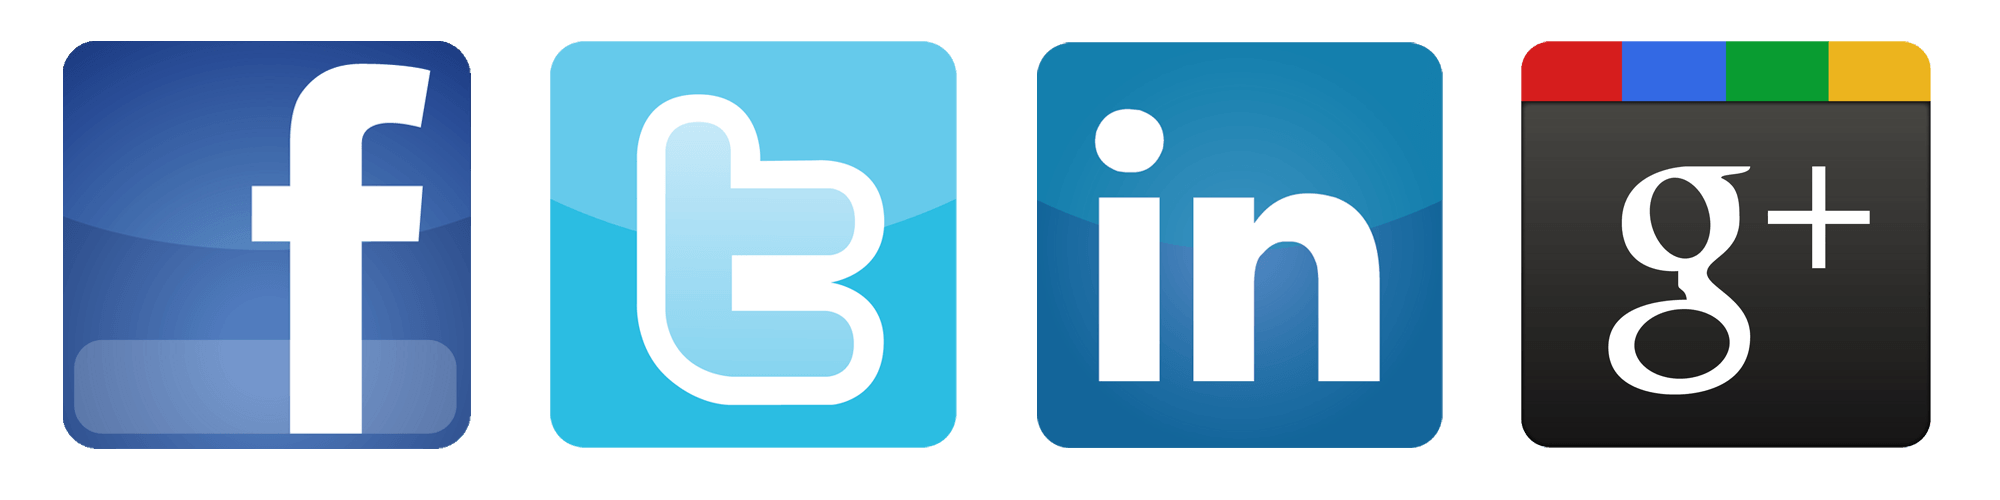 Facebook Twitter LinkedIn Logo - Facebook Twiter Logo Png Image